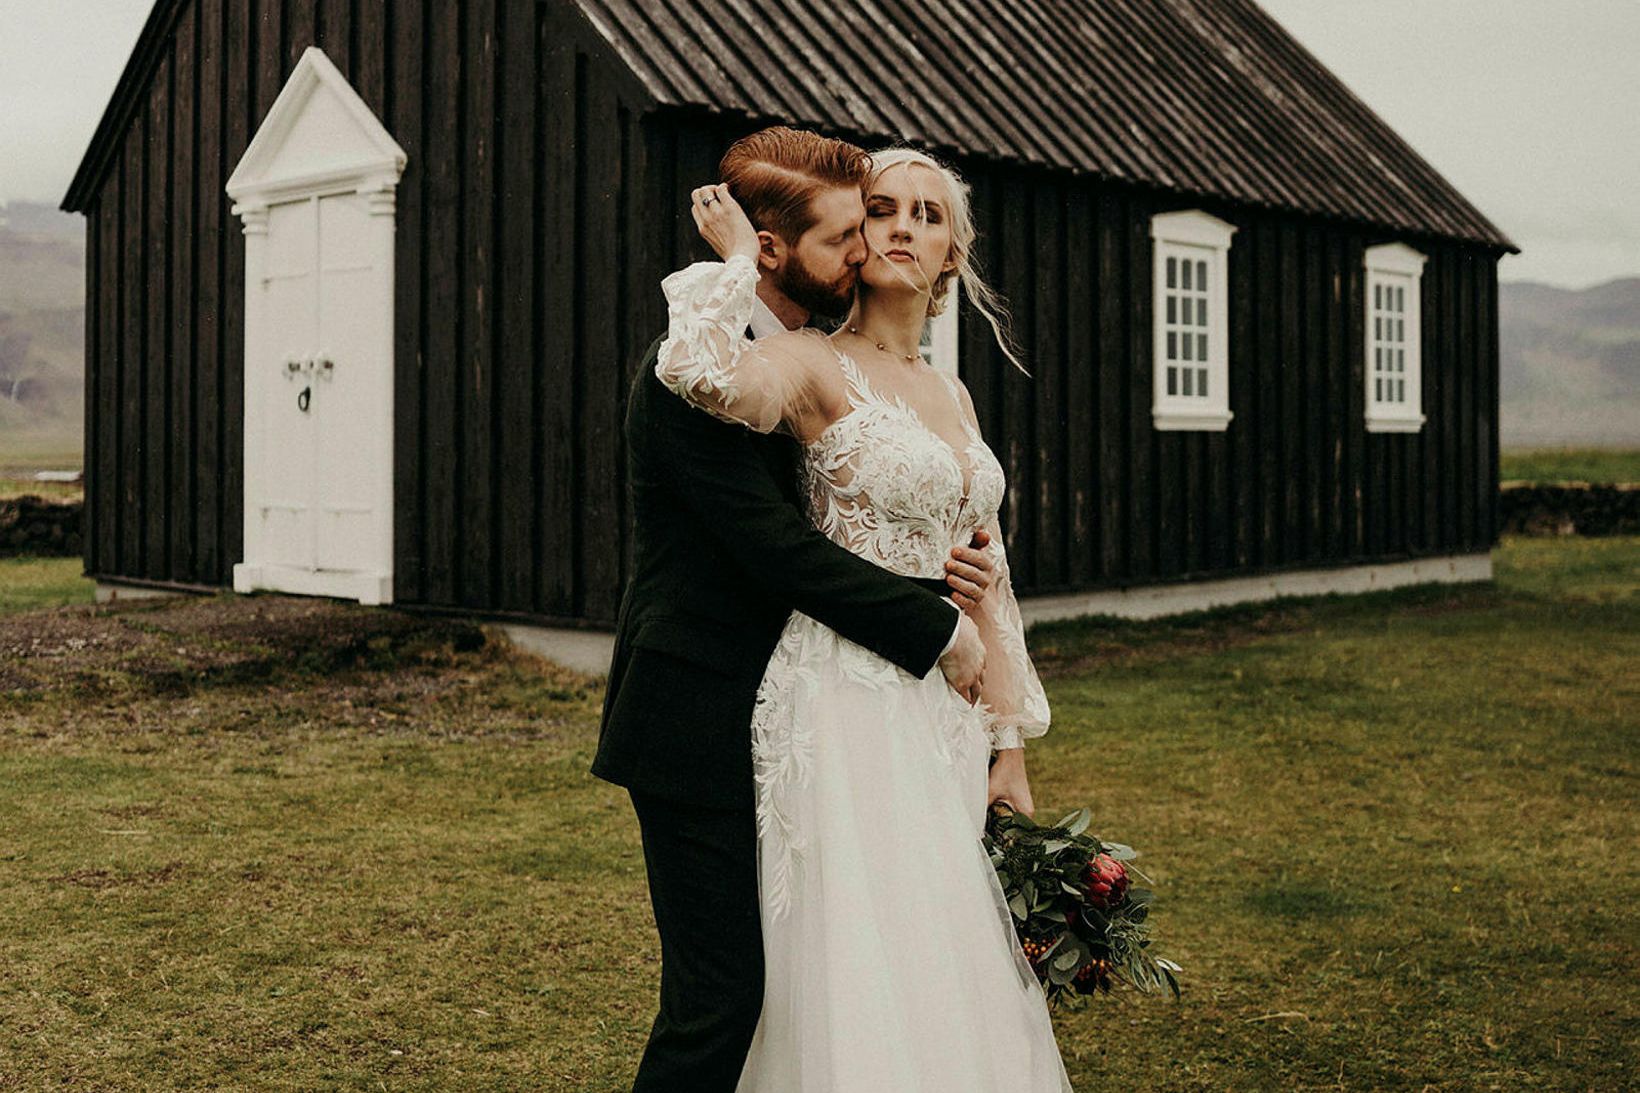 Alina og Þorvarður Bergmann áttu dásamlegan brúðkaupsdag á sínum tíma.